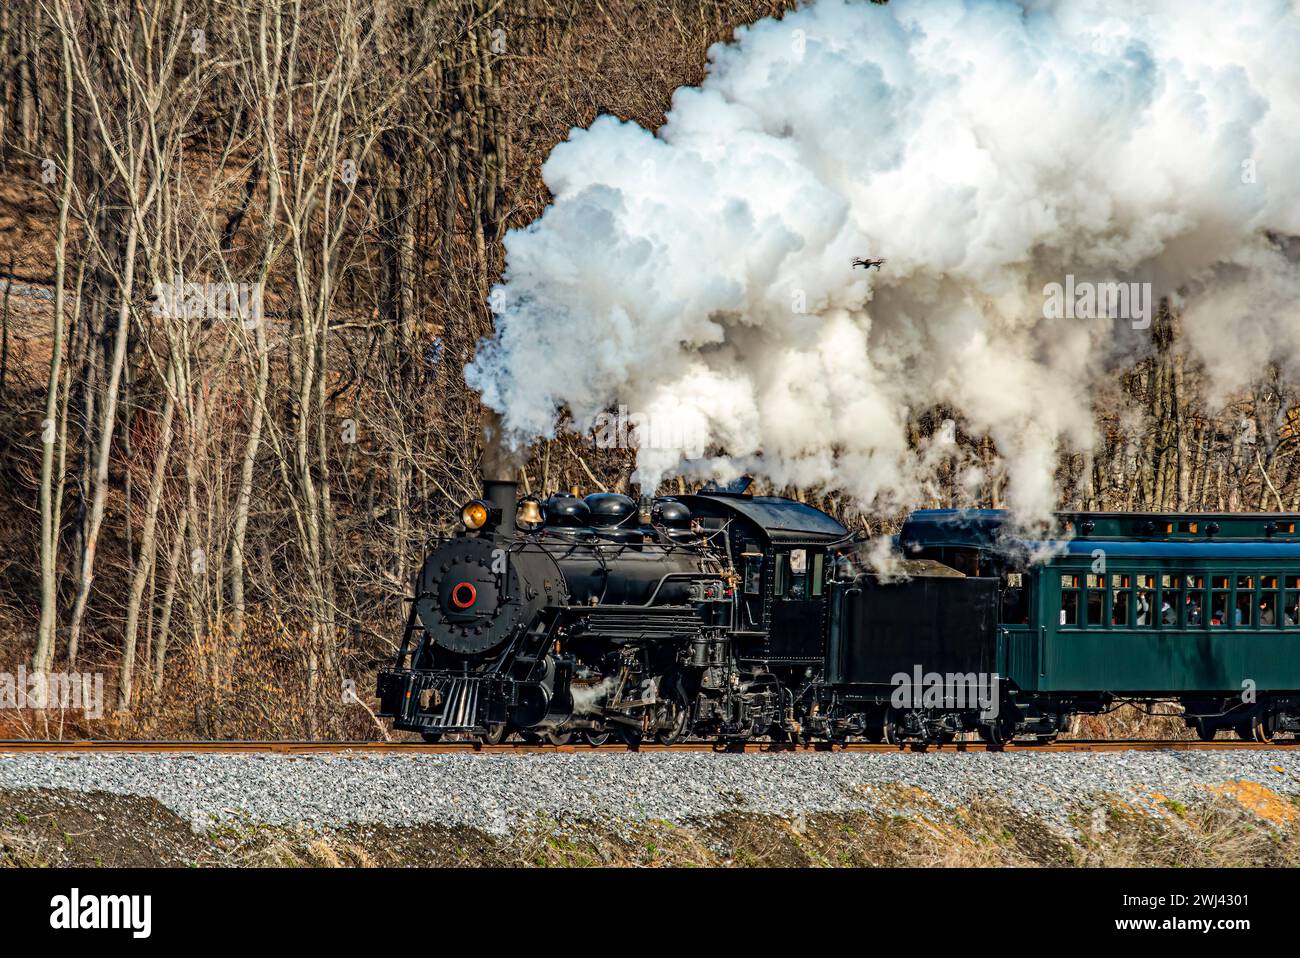 Vue d'un train de passagers à vapeur à voie étroite restauré soufflant de la fumée et voyageant à travers des terres agricoles Banque D'Images